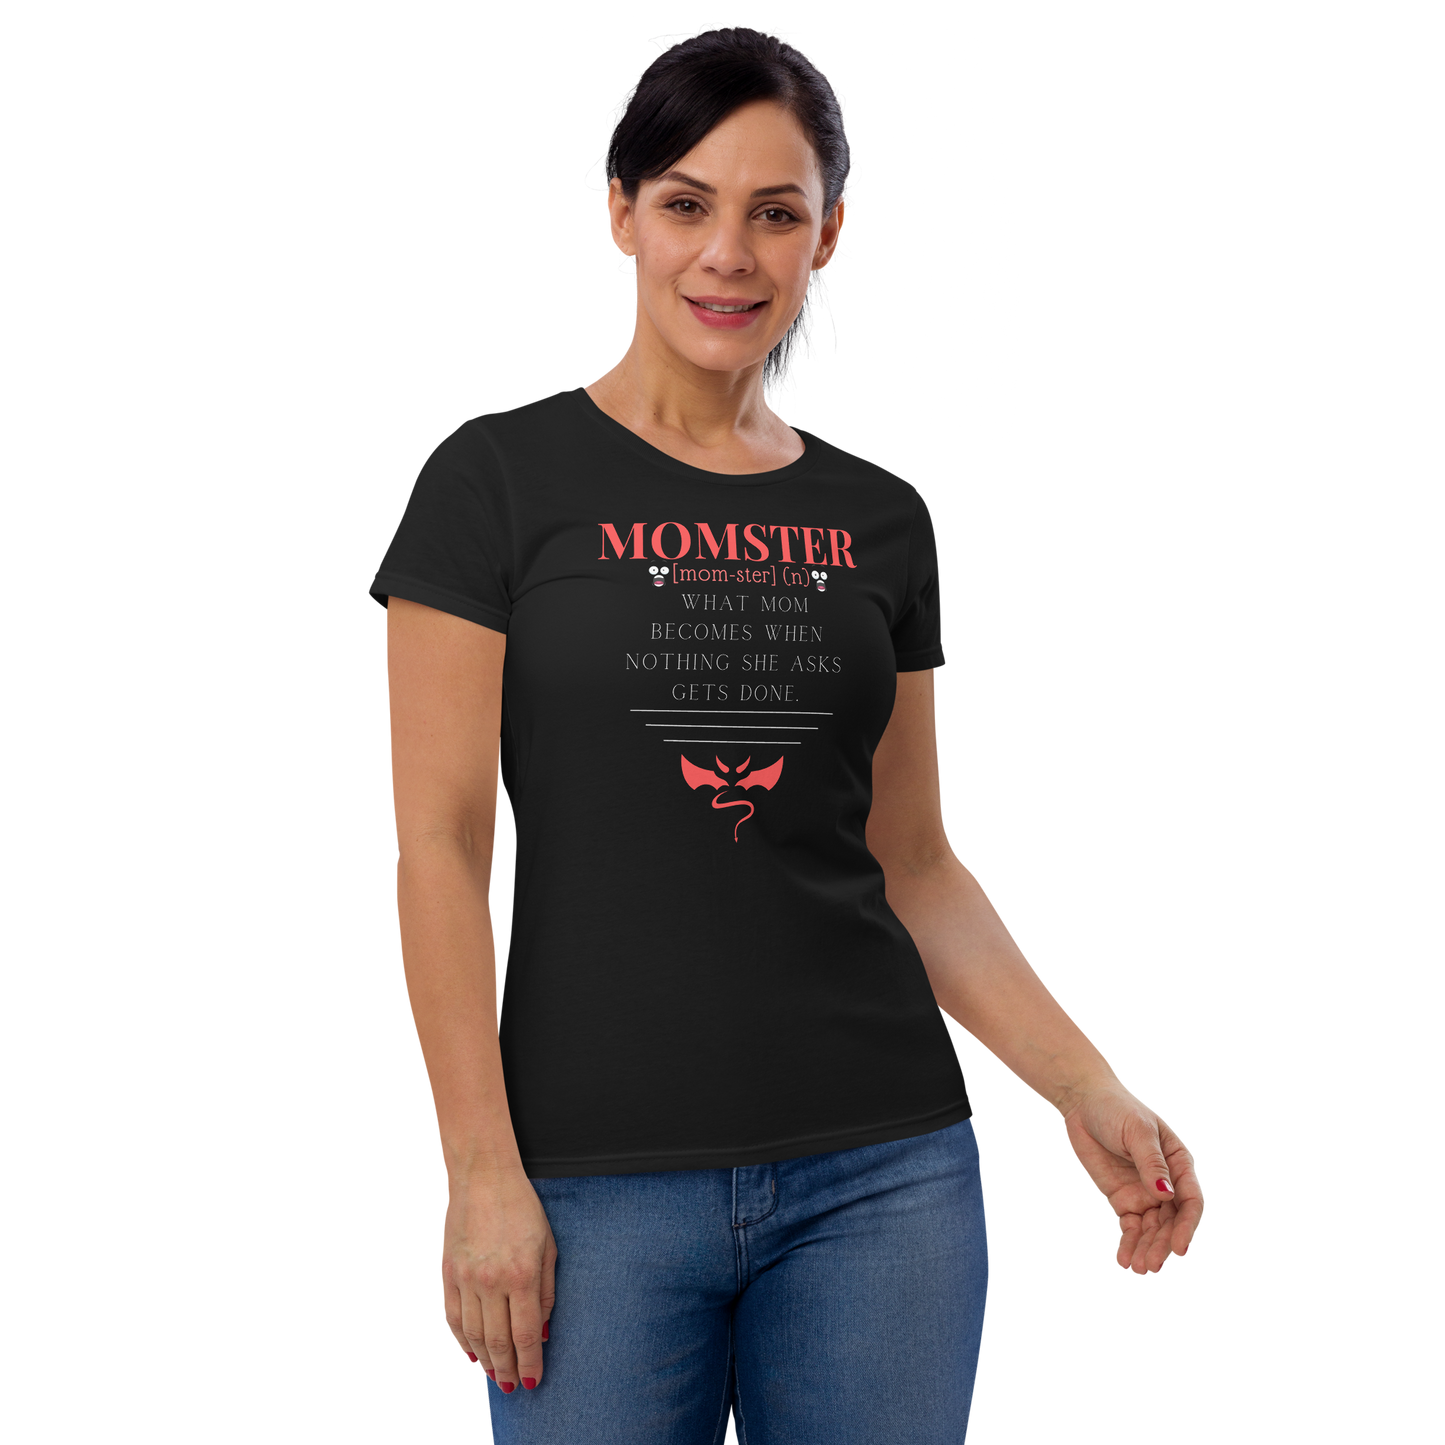 MOMSTER Women's short sleeve t-shirt